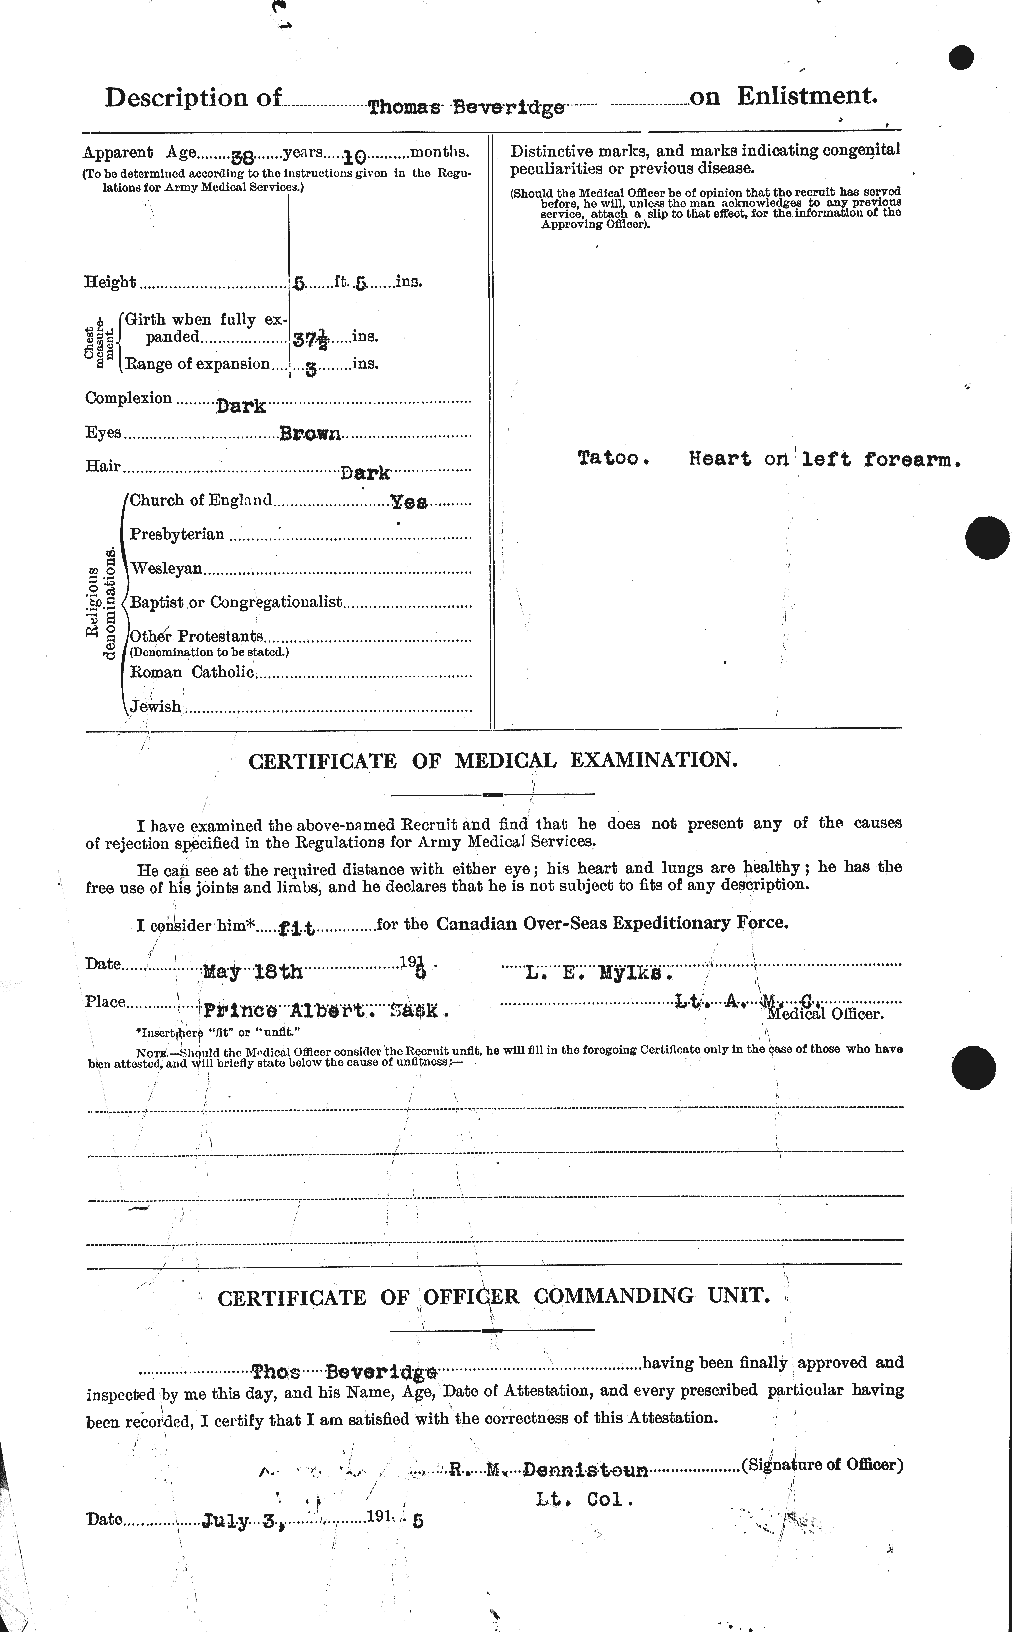 Dossiers du Personnel de la Première Guerre mondiale - CEC 237379b